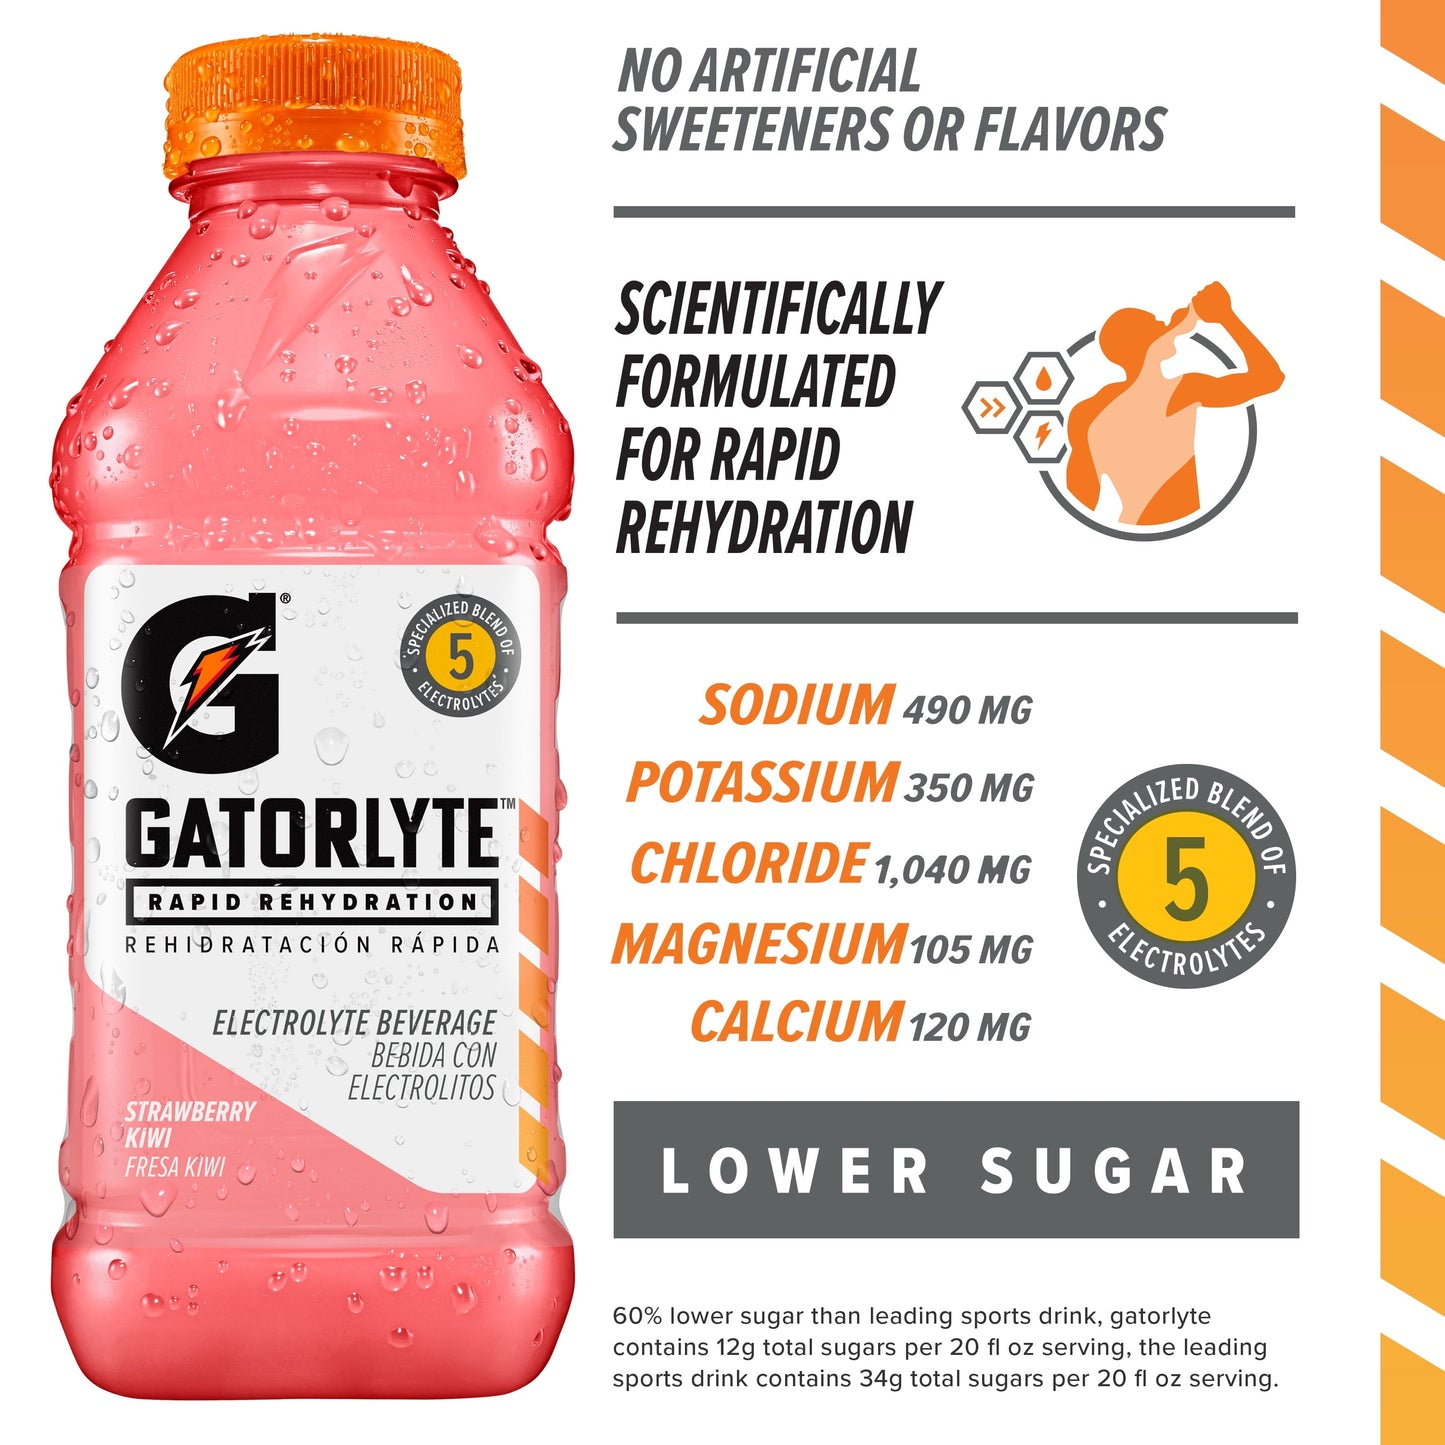 Gatorlyte Rapid Rehydration Electrolyte Beverage, Strawberry Kiwi, 20 oz Bottle